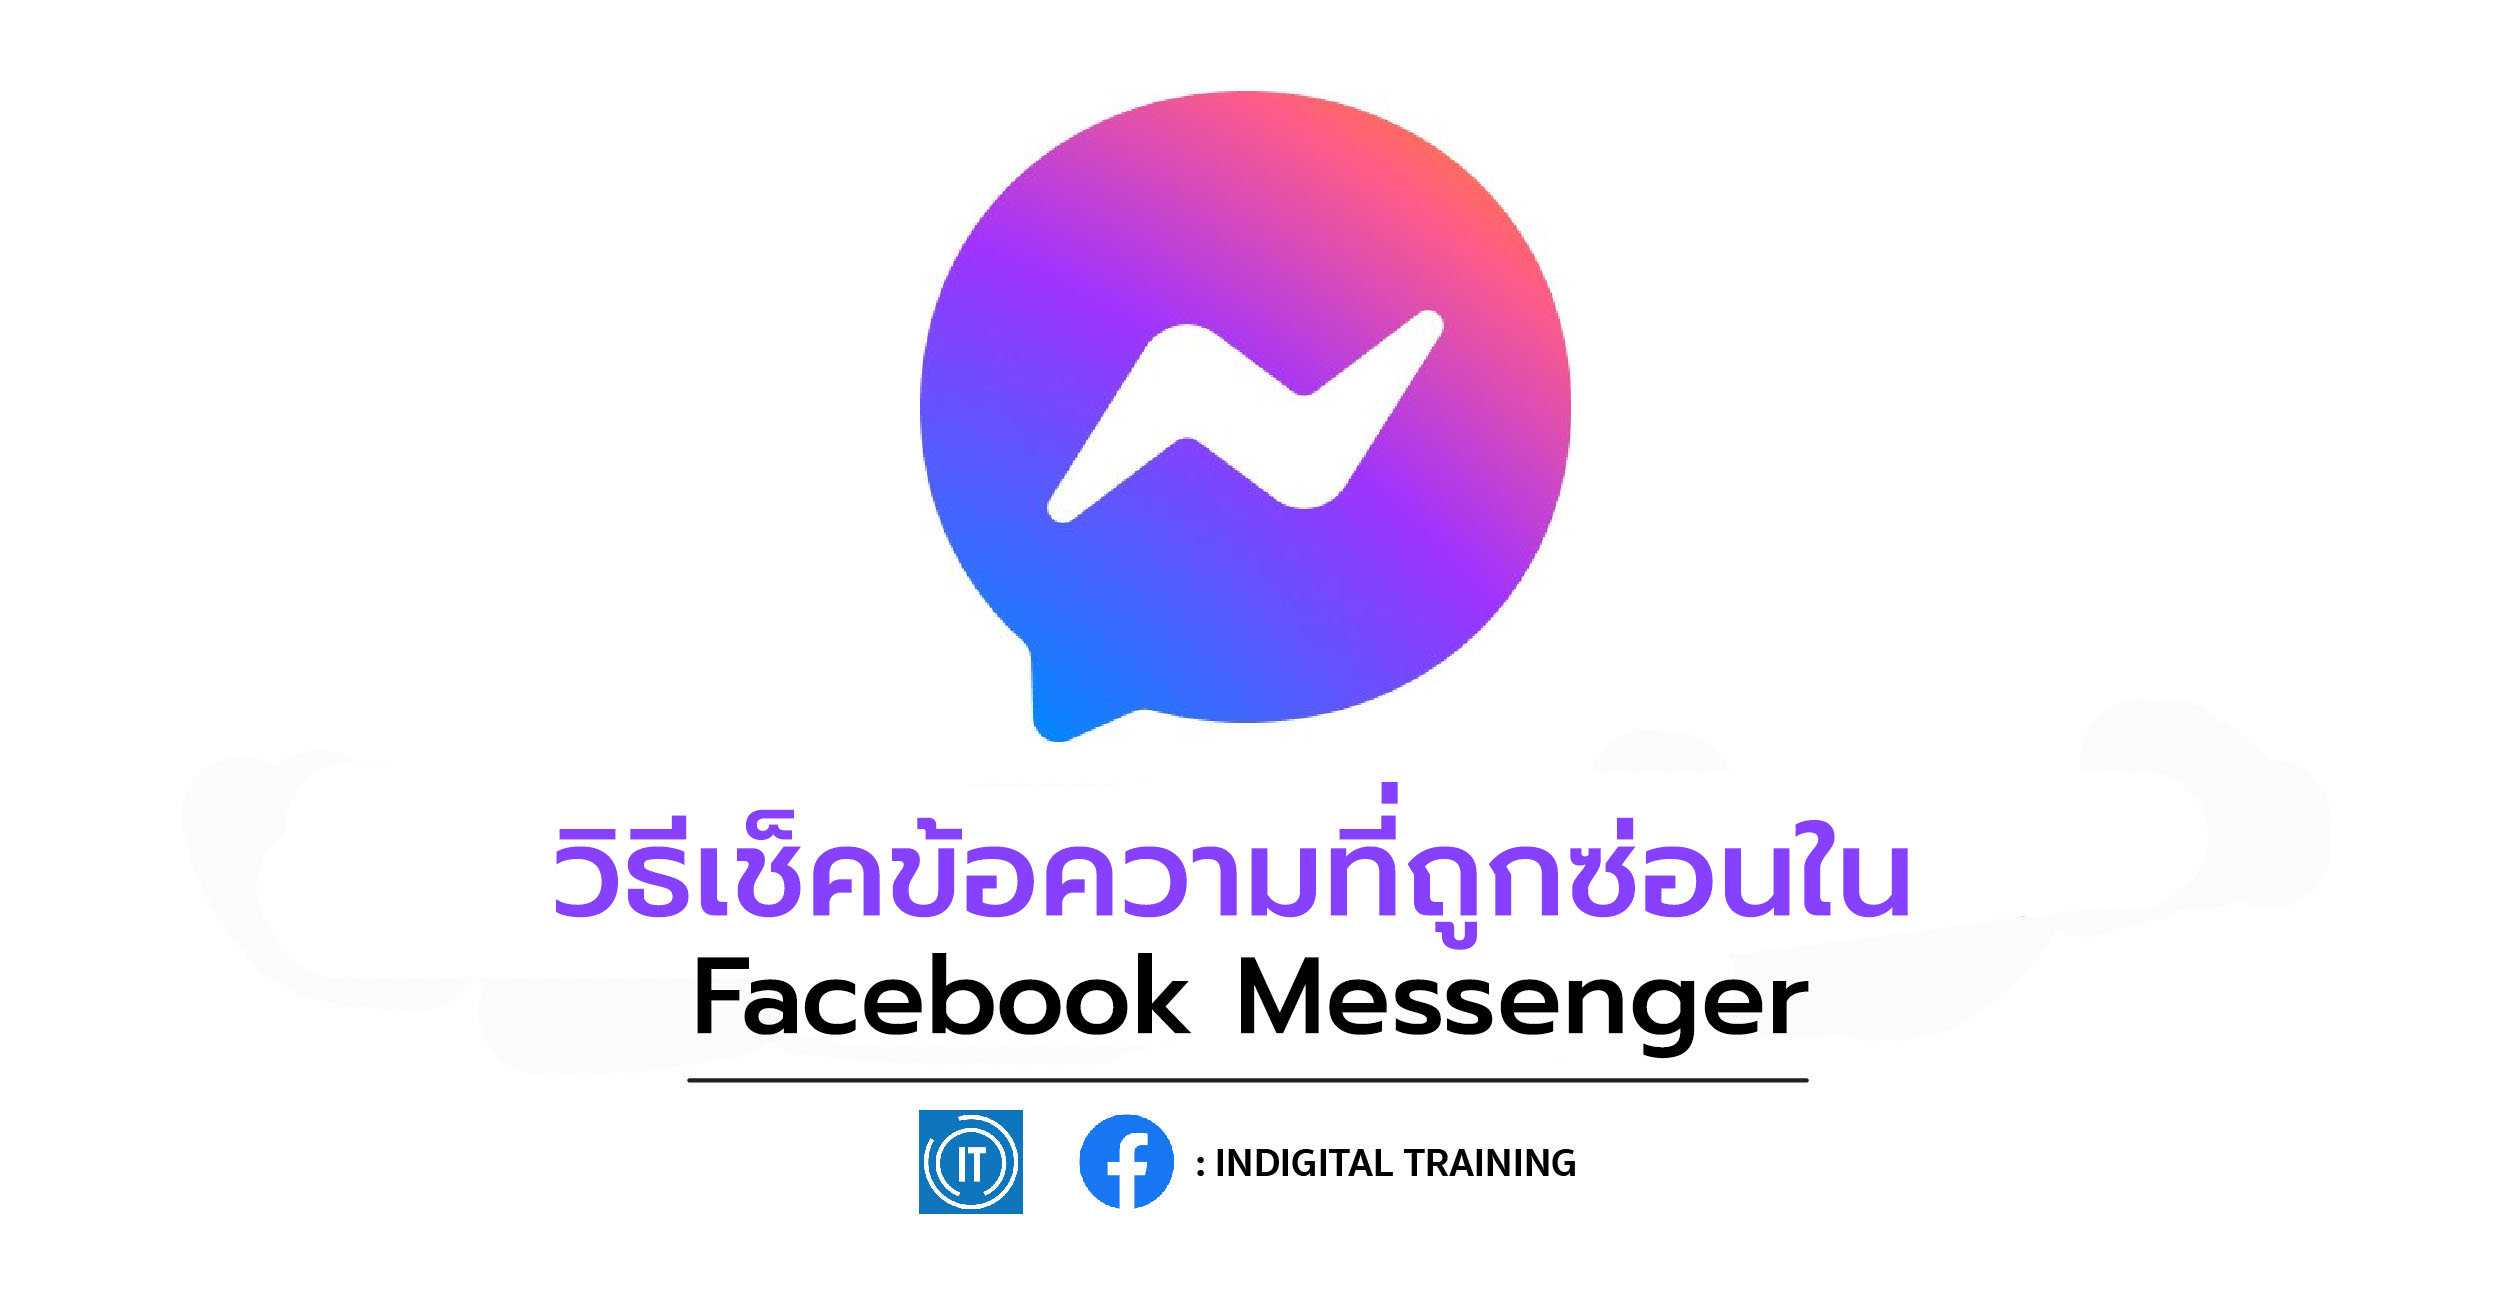 วิธีเช็คข้อความที่ถูกซ่อนใน Facebook Messenger